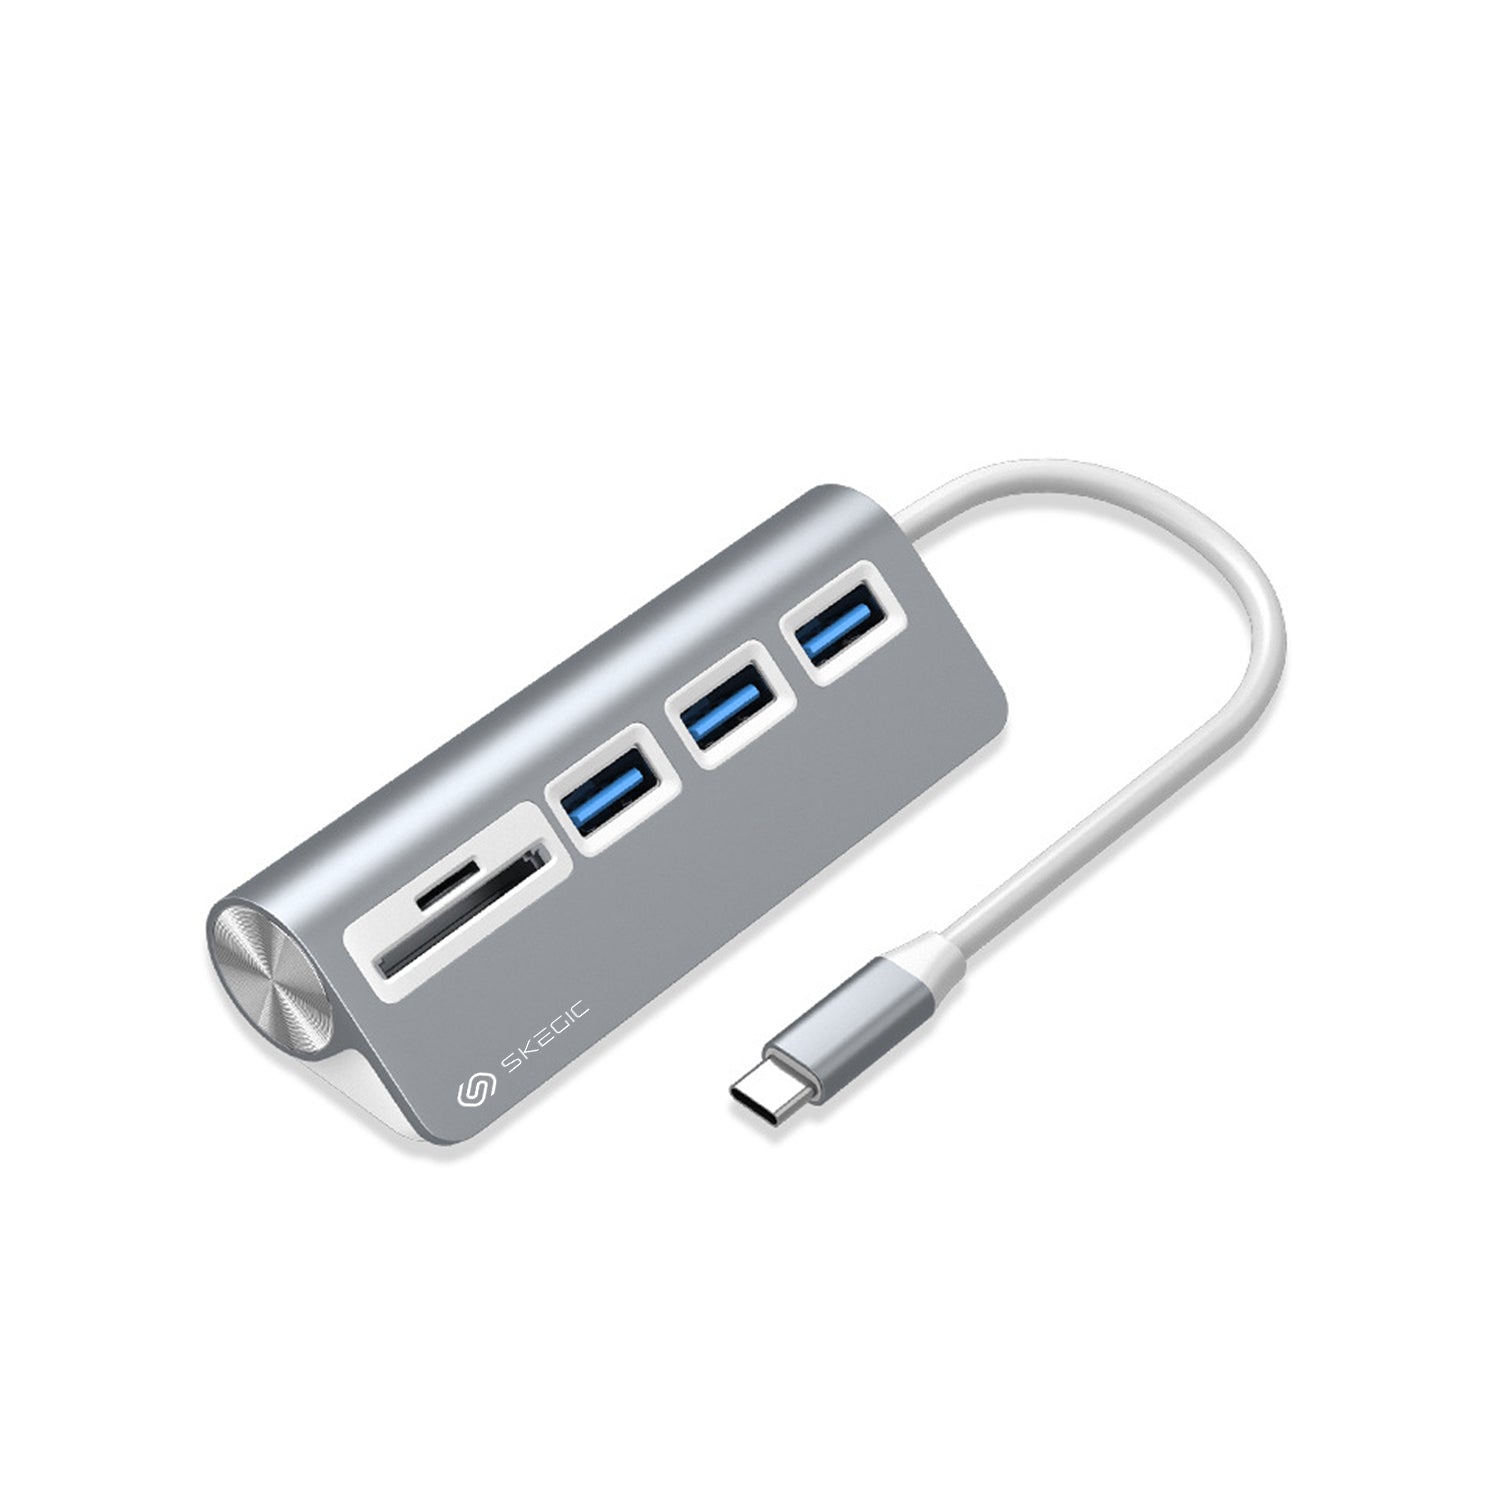 Aluminum USB 3.0 Hub & Card Reader